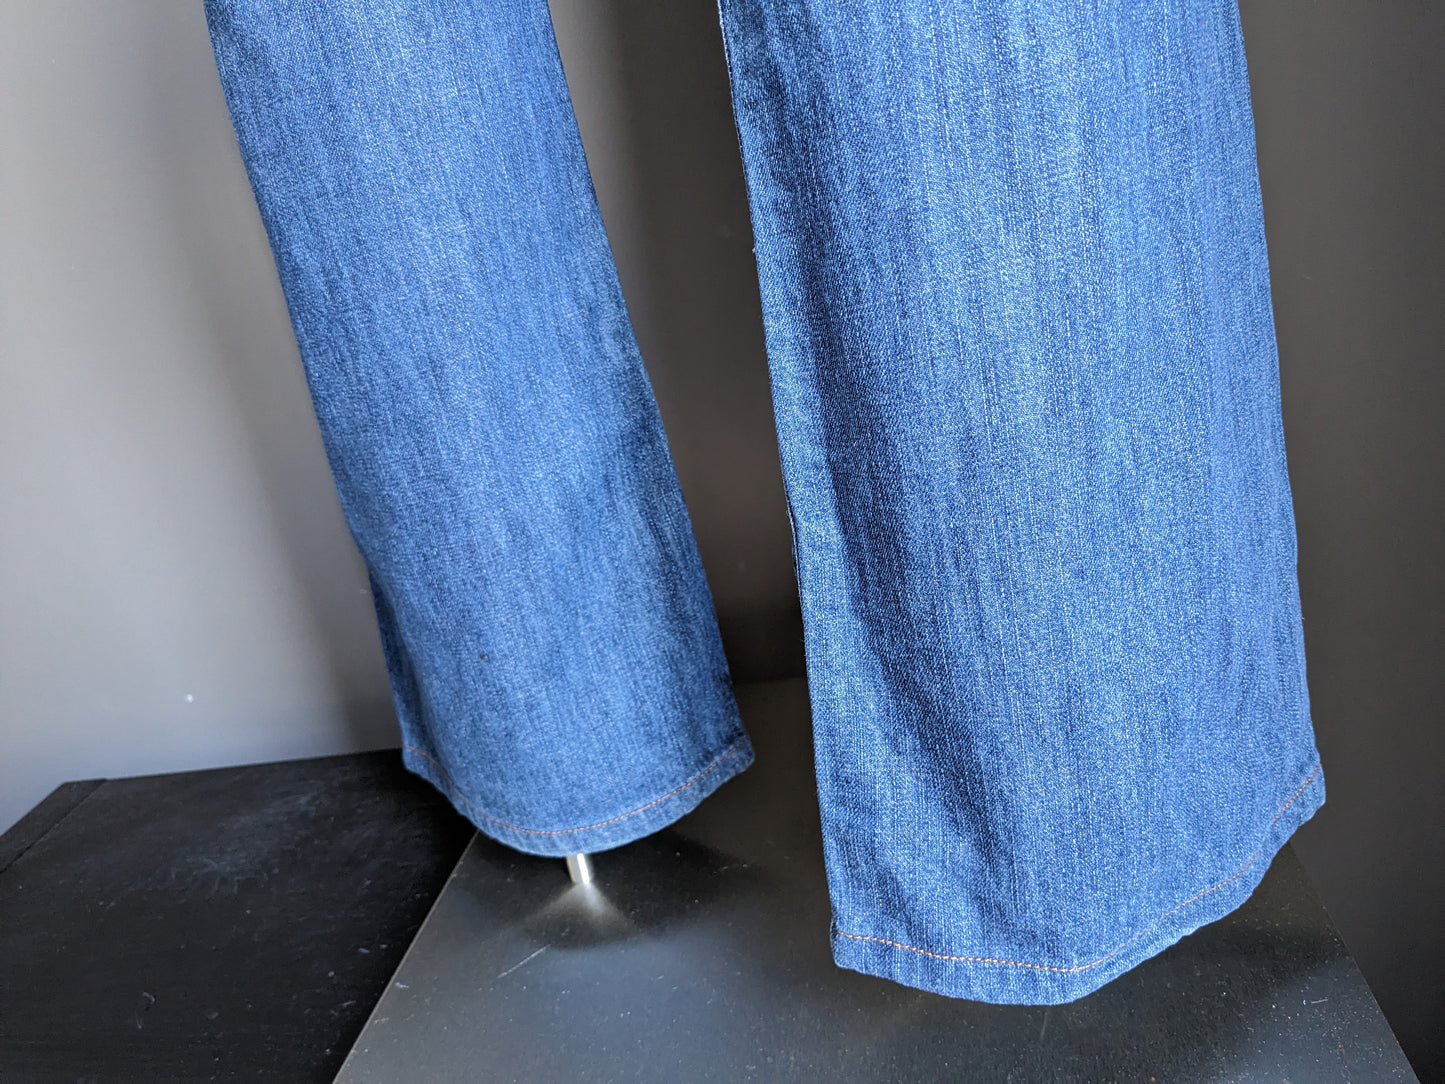 Jeans di fiume Woods. Colorato blu. Taglia W38 - L34.